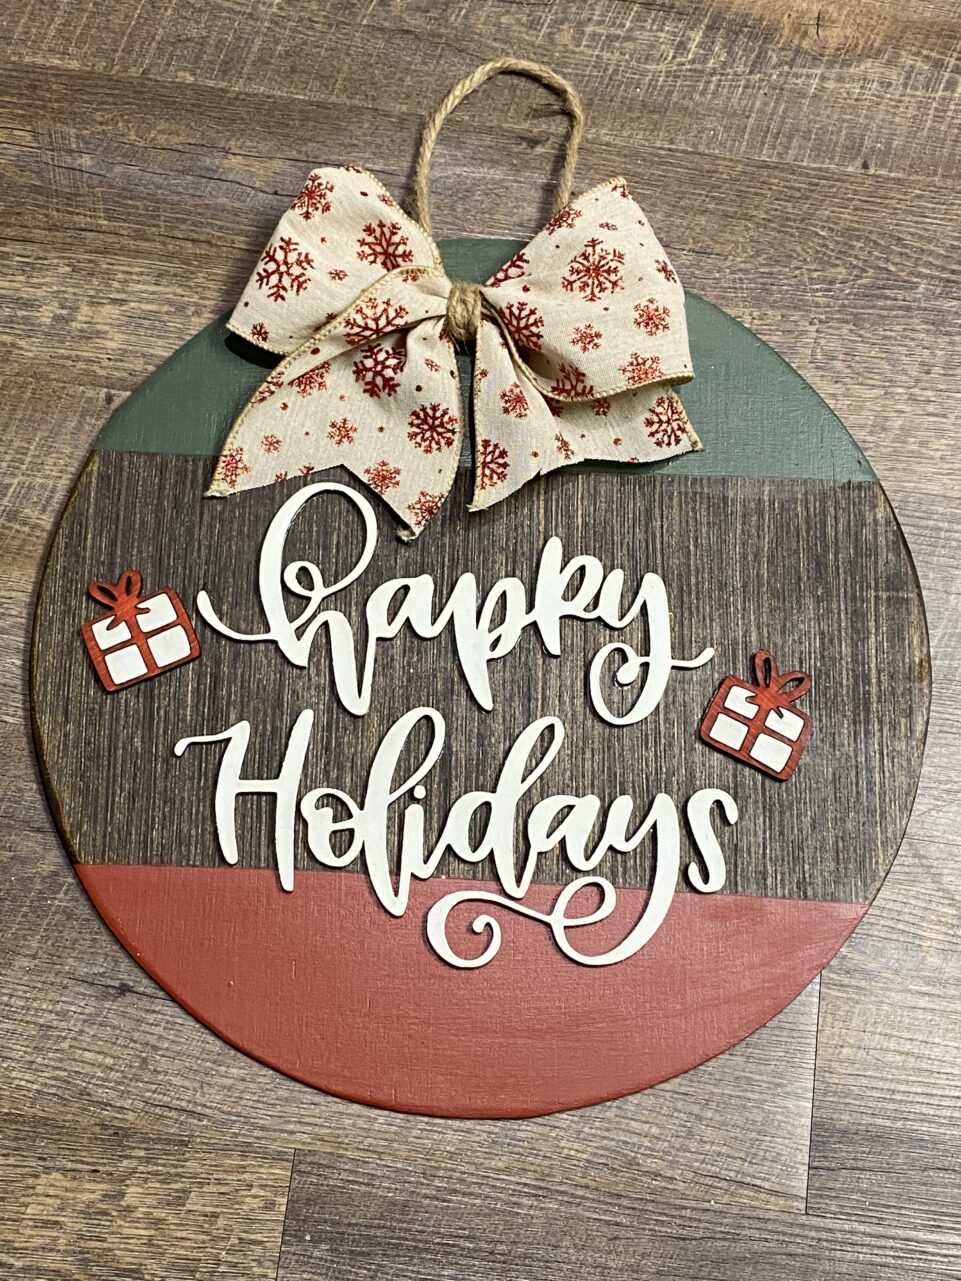 Happy Holidays Door Hanger